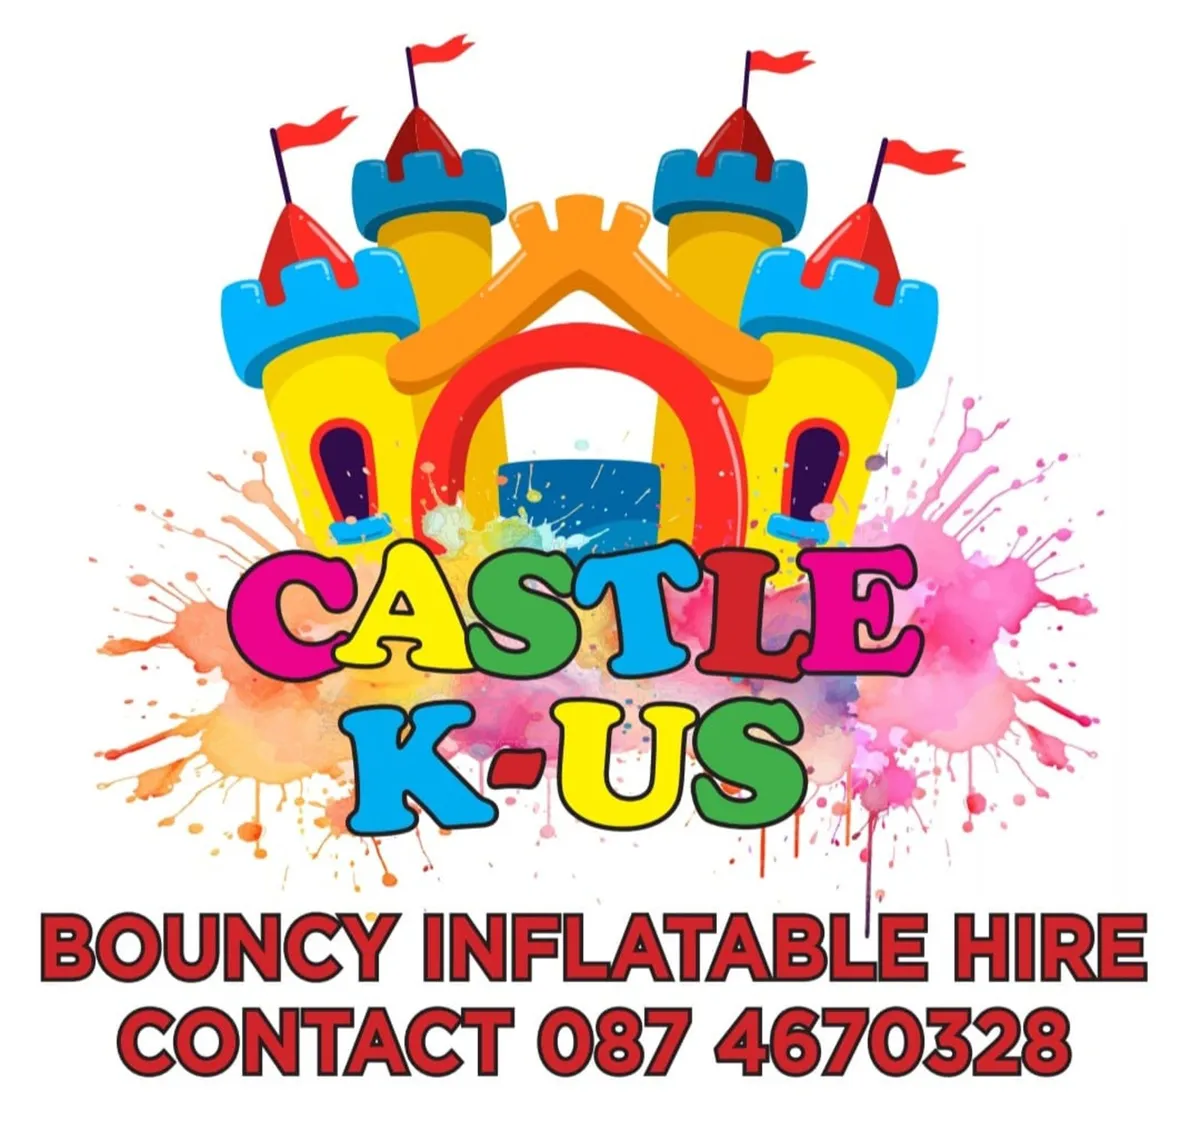 Bouncy castle hire